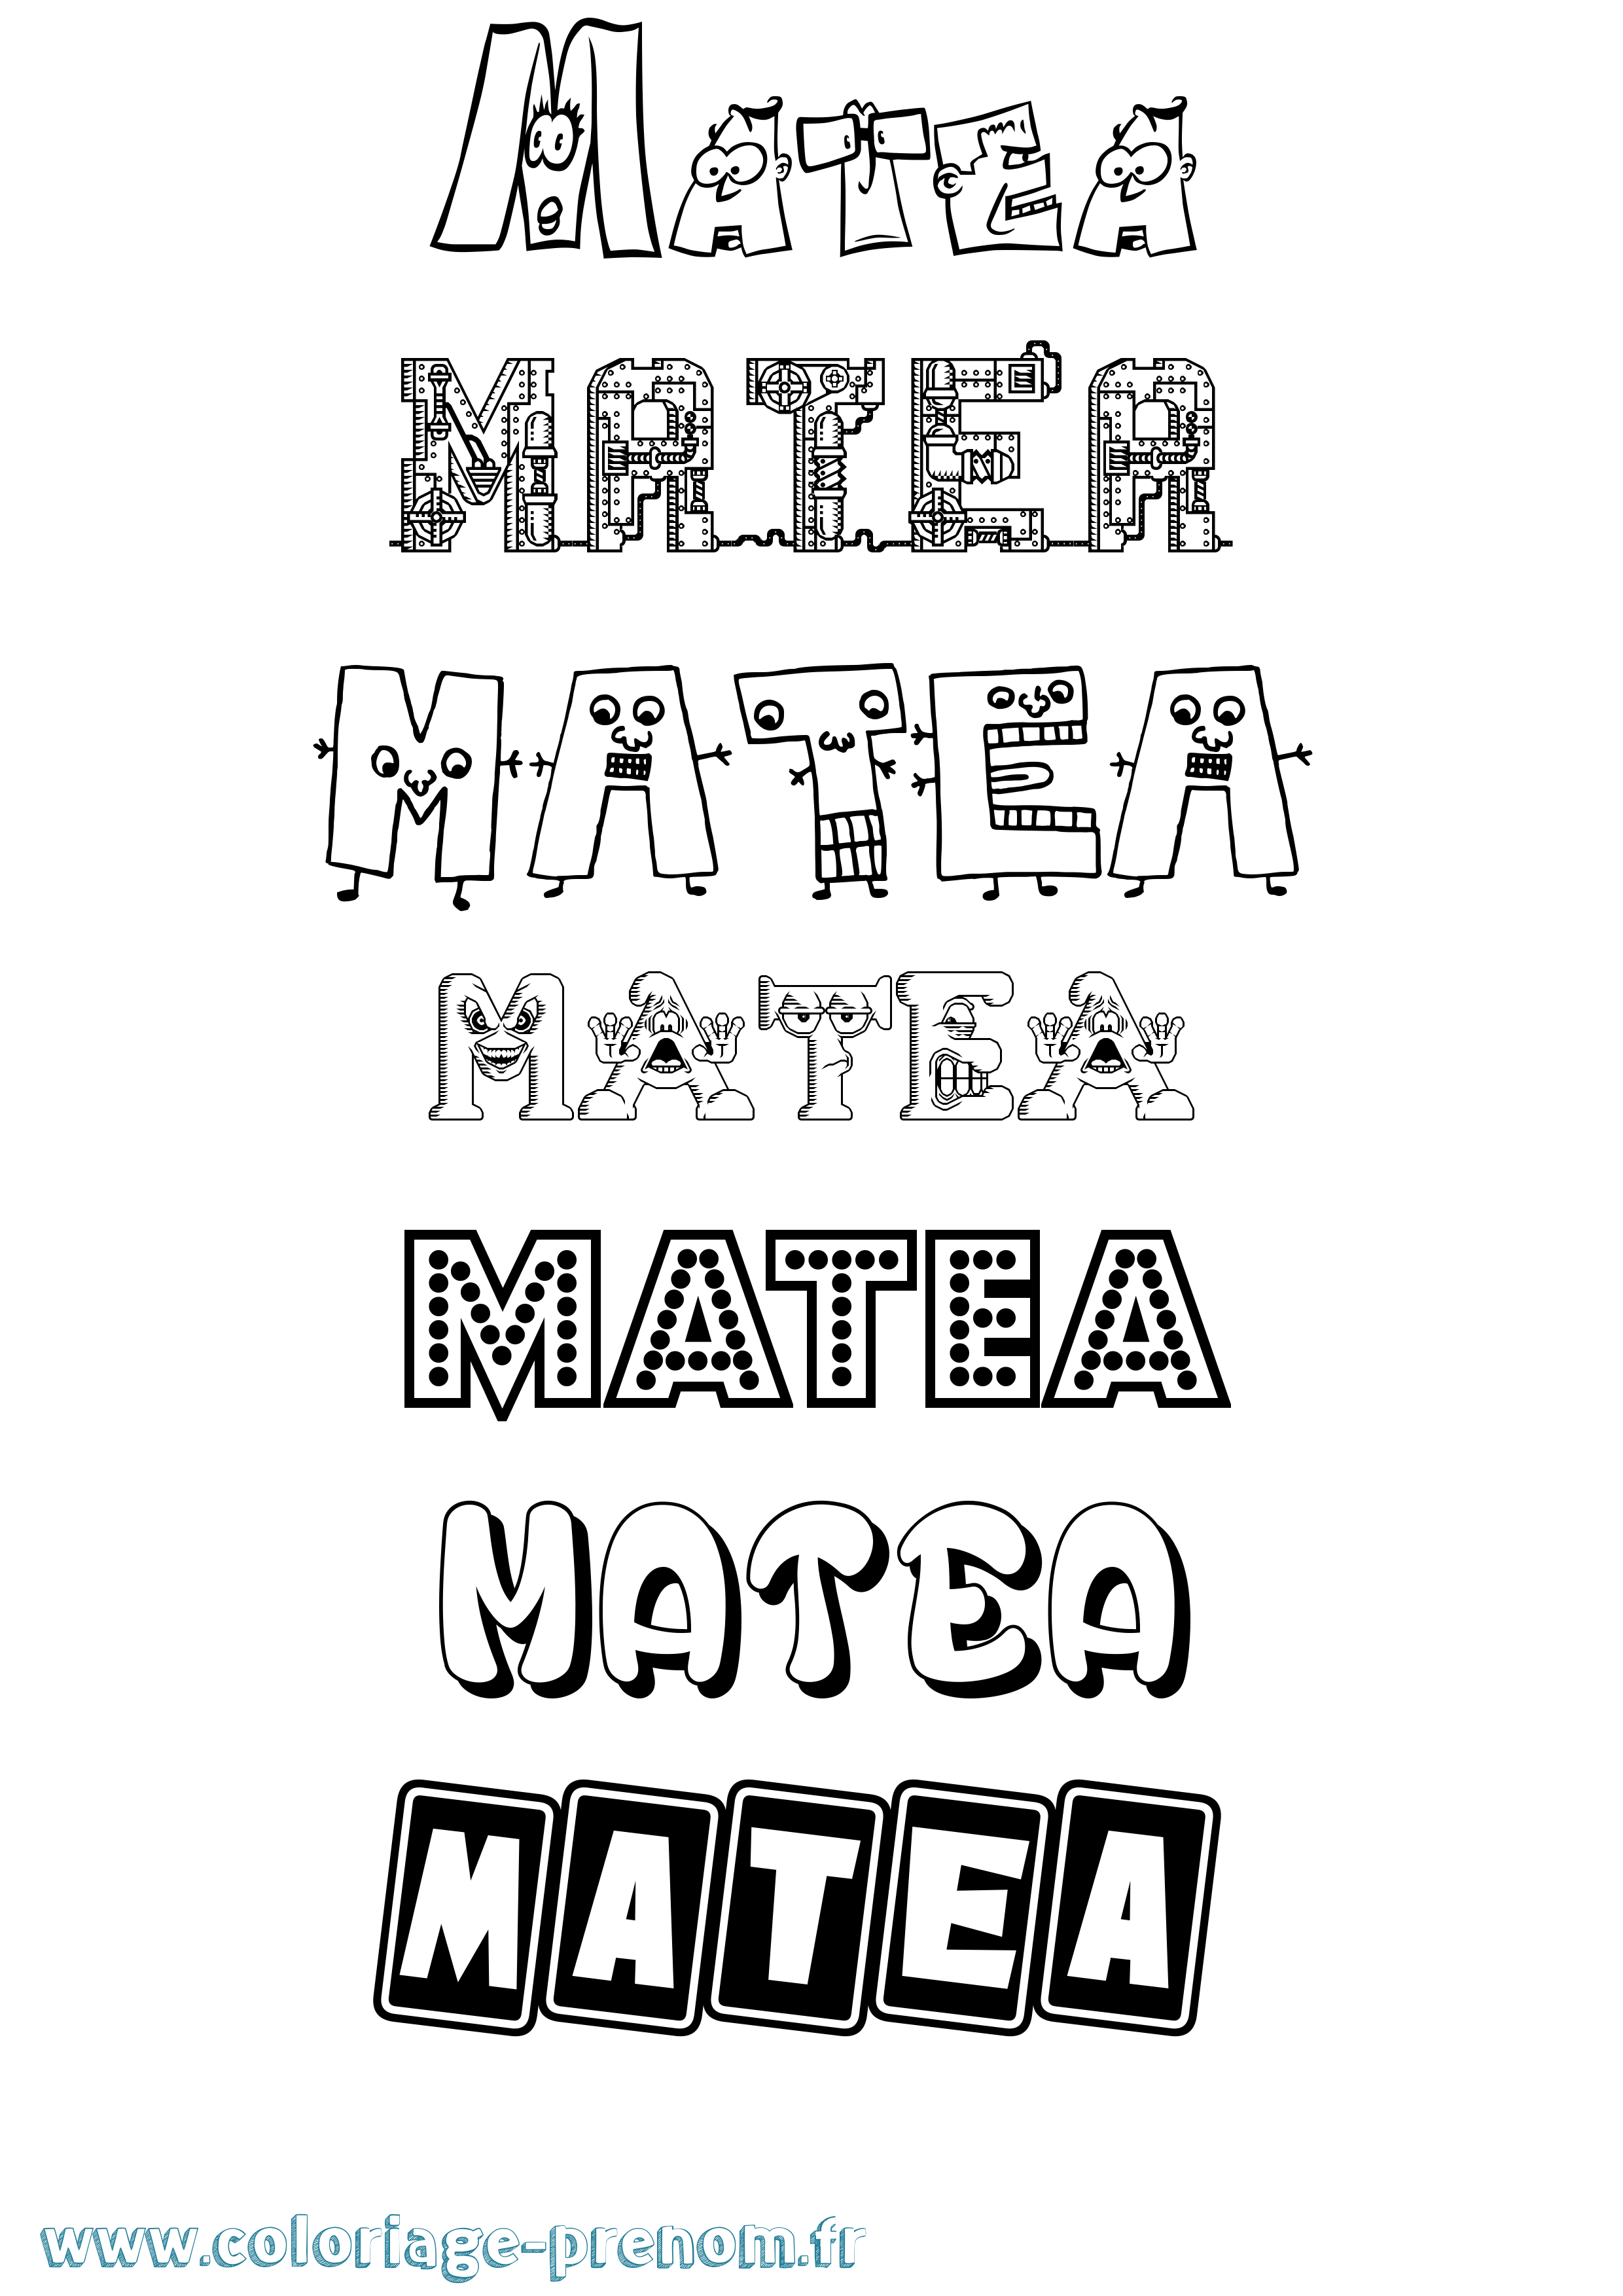 Coloriage prénom Matea Fun